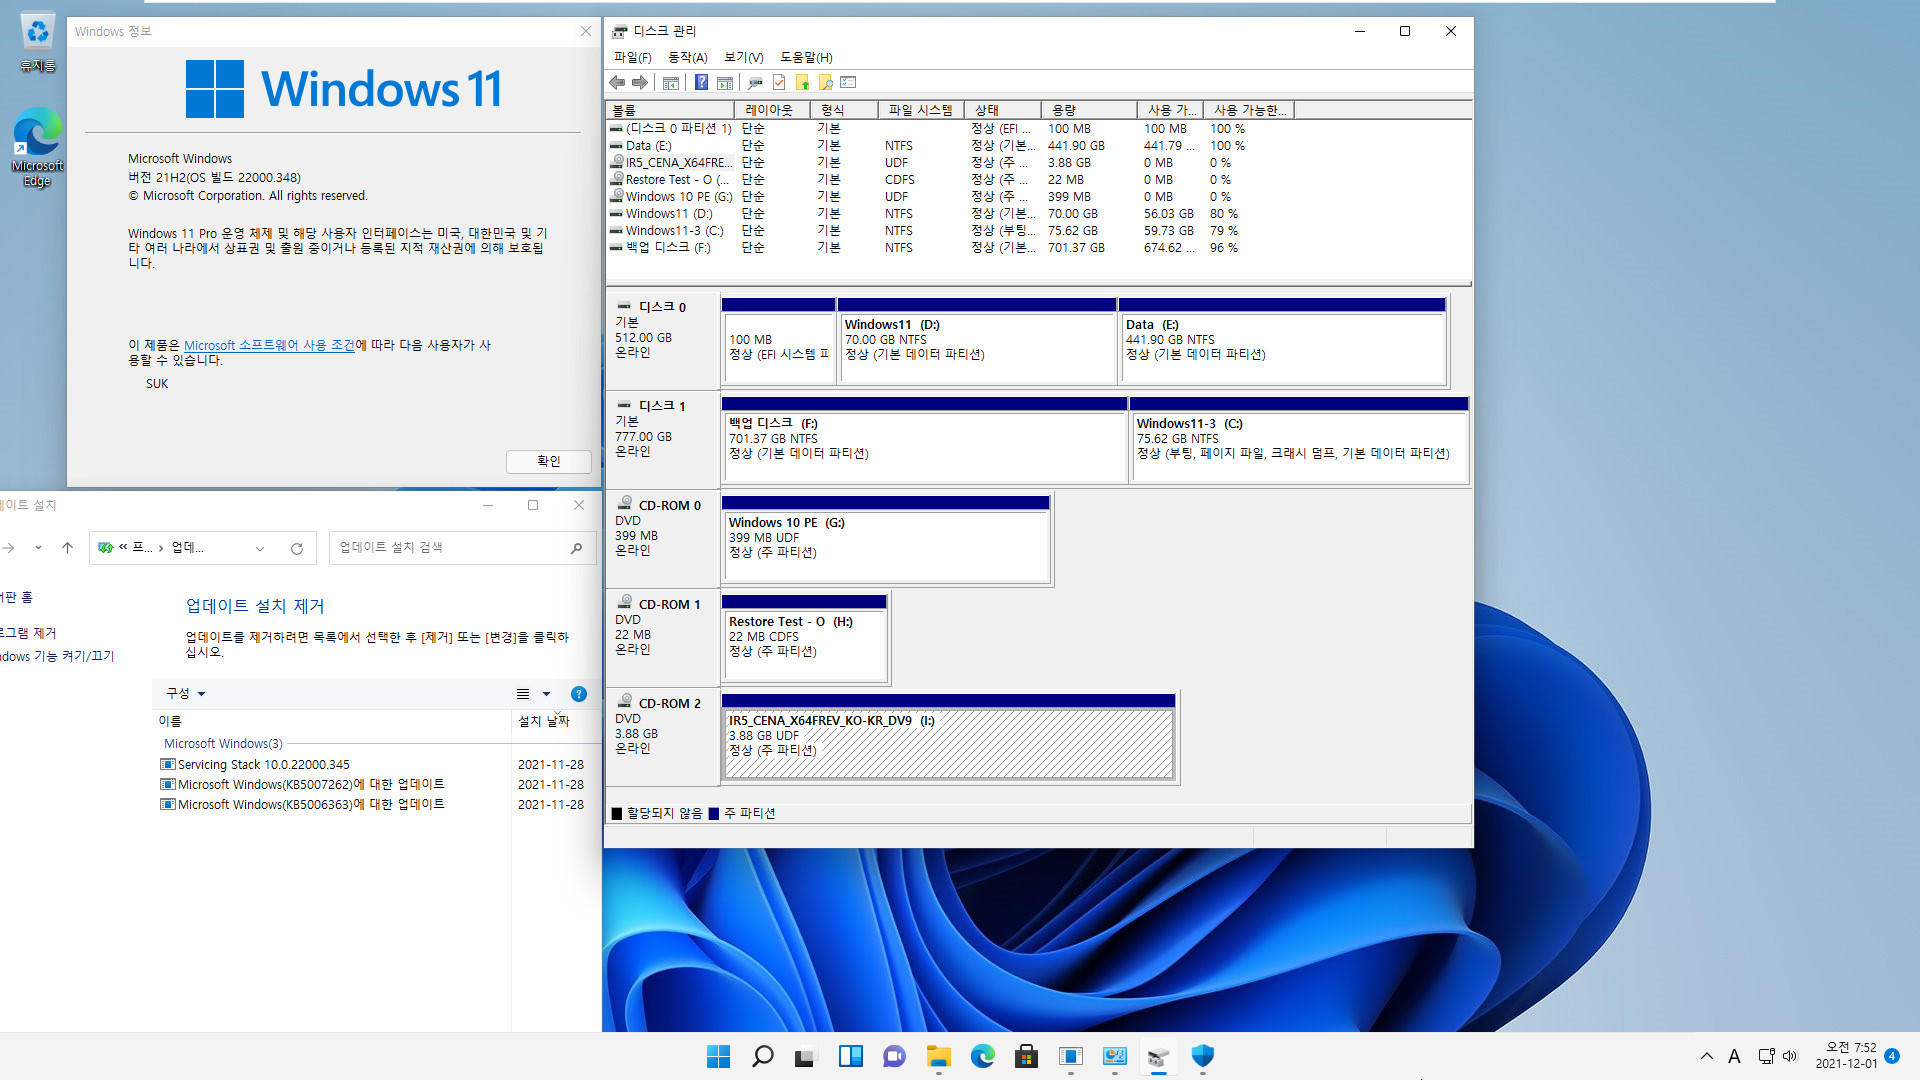 Windows 8.1은 여전히 같은 컴퓨터에서 다른 파티션에 복원하면 기존 윈도우와 복원한 윈도우 2개를 동시에 사용하는군요. 기존 C드라이브 문자만 삭제하면 정상 부팅됩니다 2021-12-01_075255.jpg